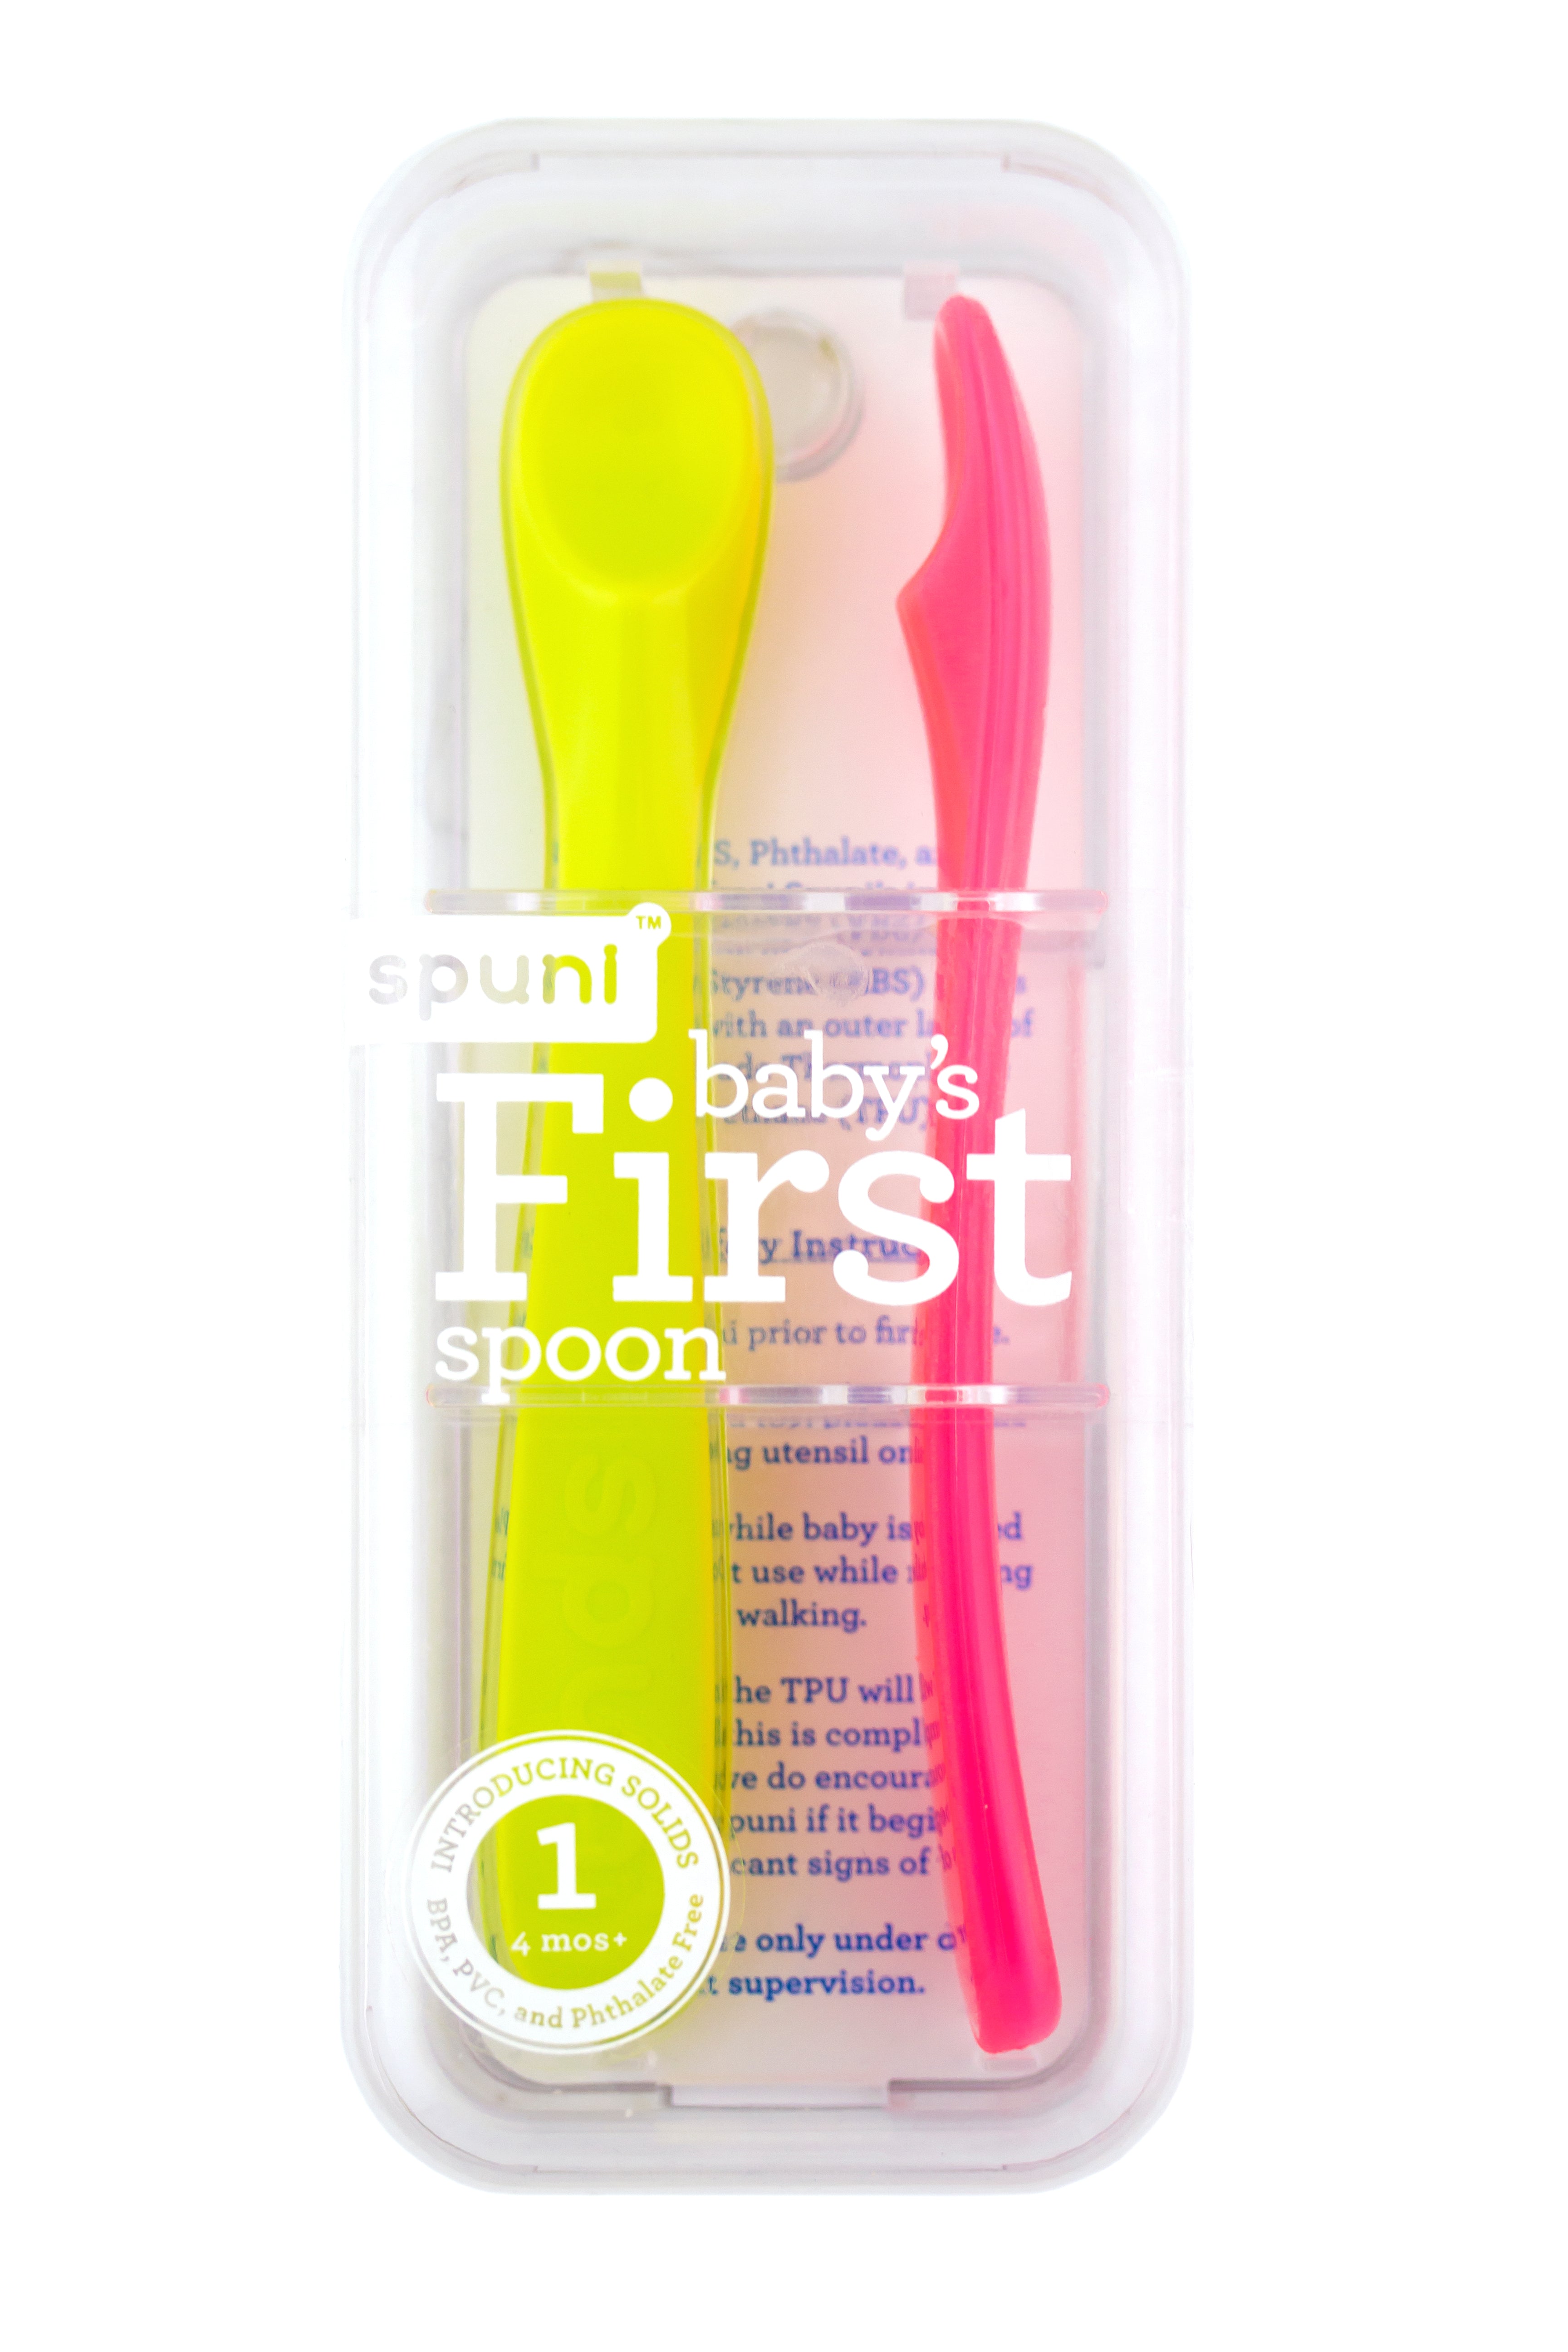 spuni spoon set